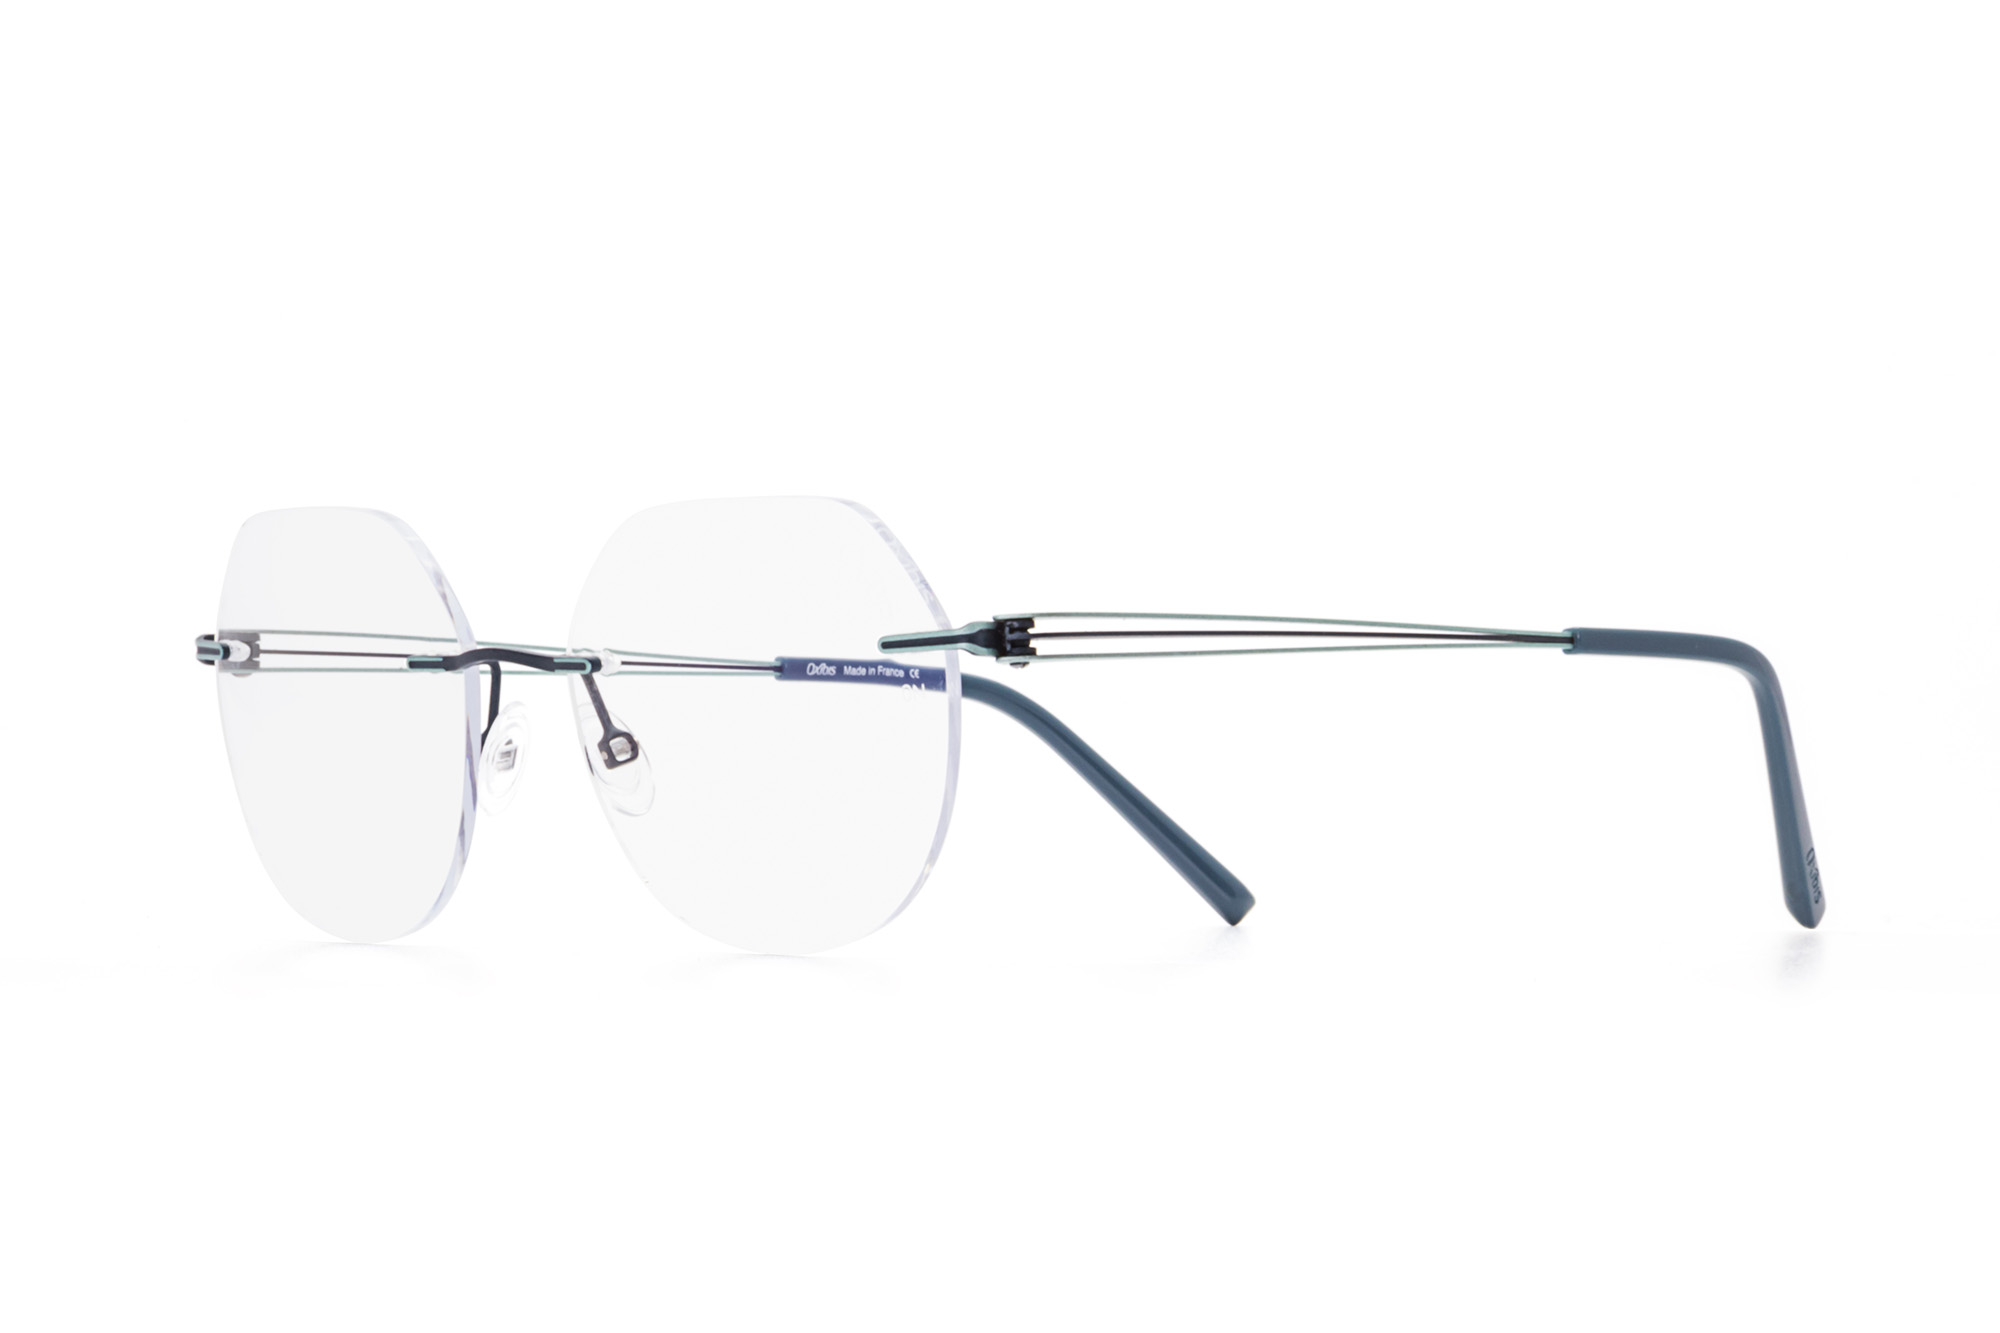 Kullanıma hazır optik tarzda işlenmiş camları ve optik uyumlu çerçevesiyle Oxibis Alyzee AZ6C2 51 orta ekartman mavi-yeşil ve mavi renkli altıgen ve yuvarlak model çerçevesiz kadın gözlüğünü optisyen veya gözlükçülerin sunacağı numarasız veya numaralı cam özelleştirmeleriyle size en yakın gözlükçüden satın alabilirsiniz.